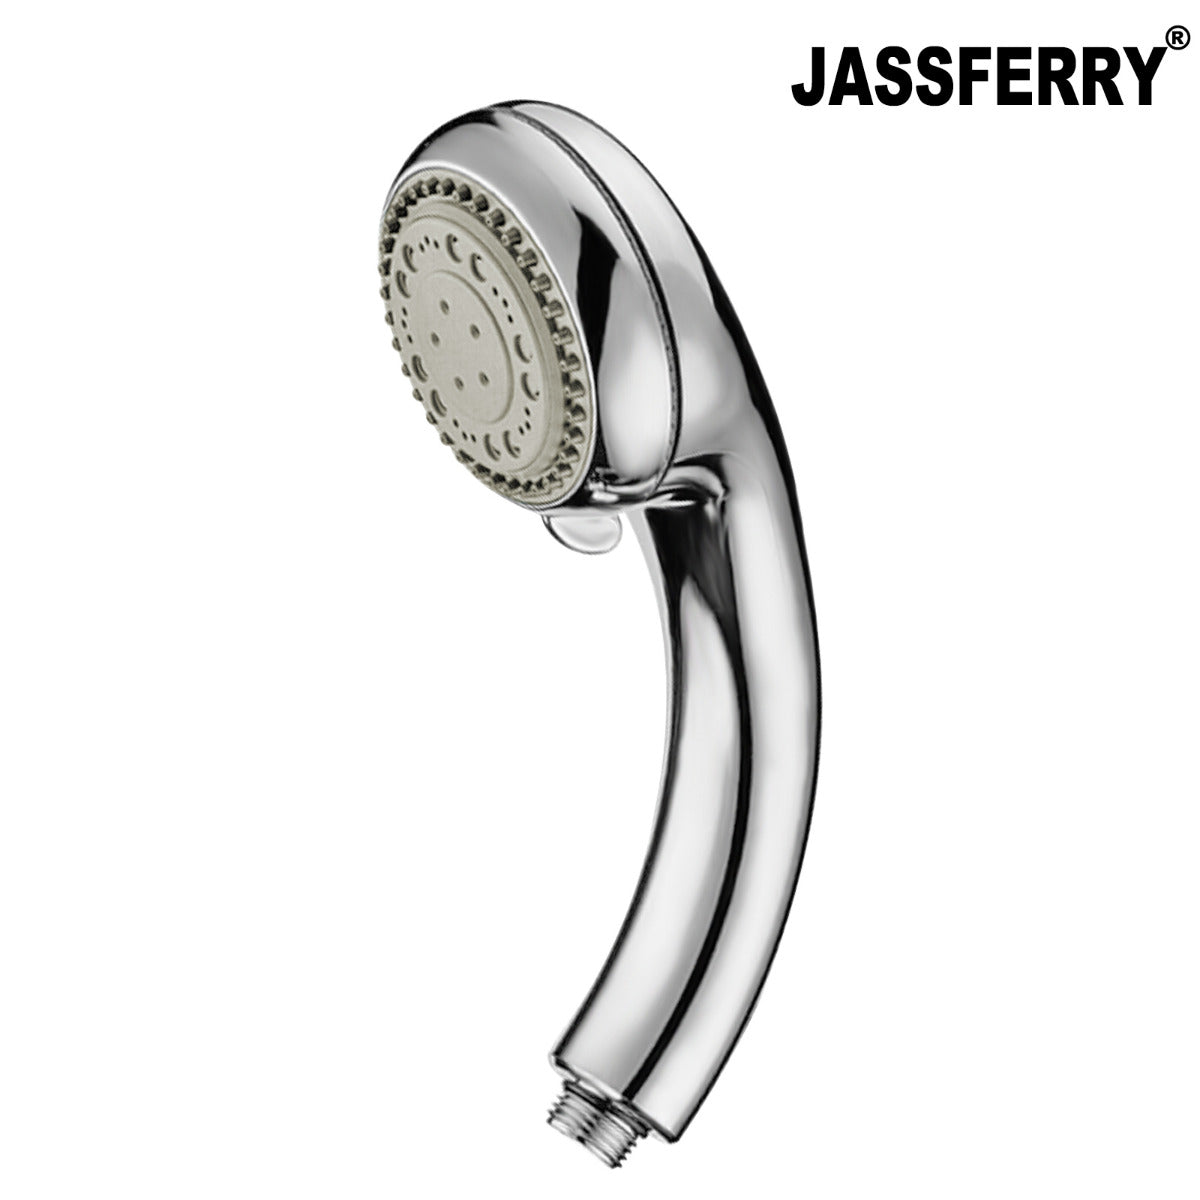 JassferryJASSFERRY Massage Spray Hand Shower Head Handheld Handset Ideal 5 PositionShower Heads